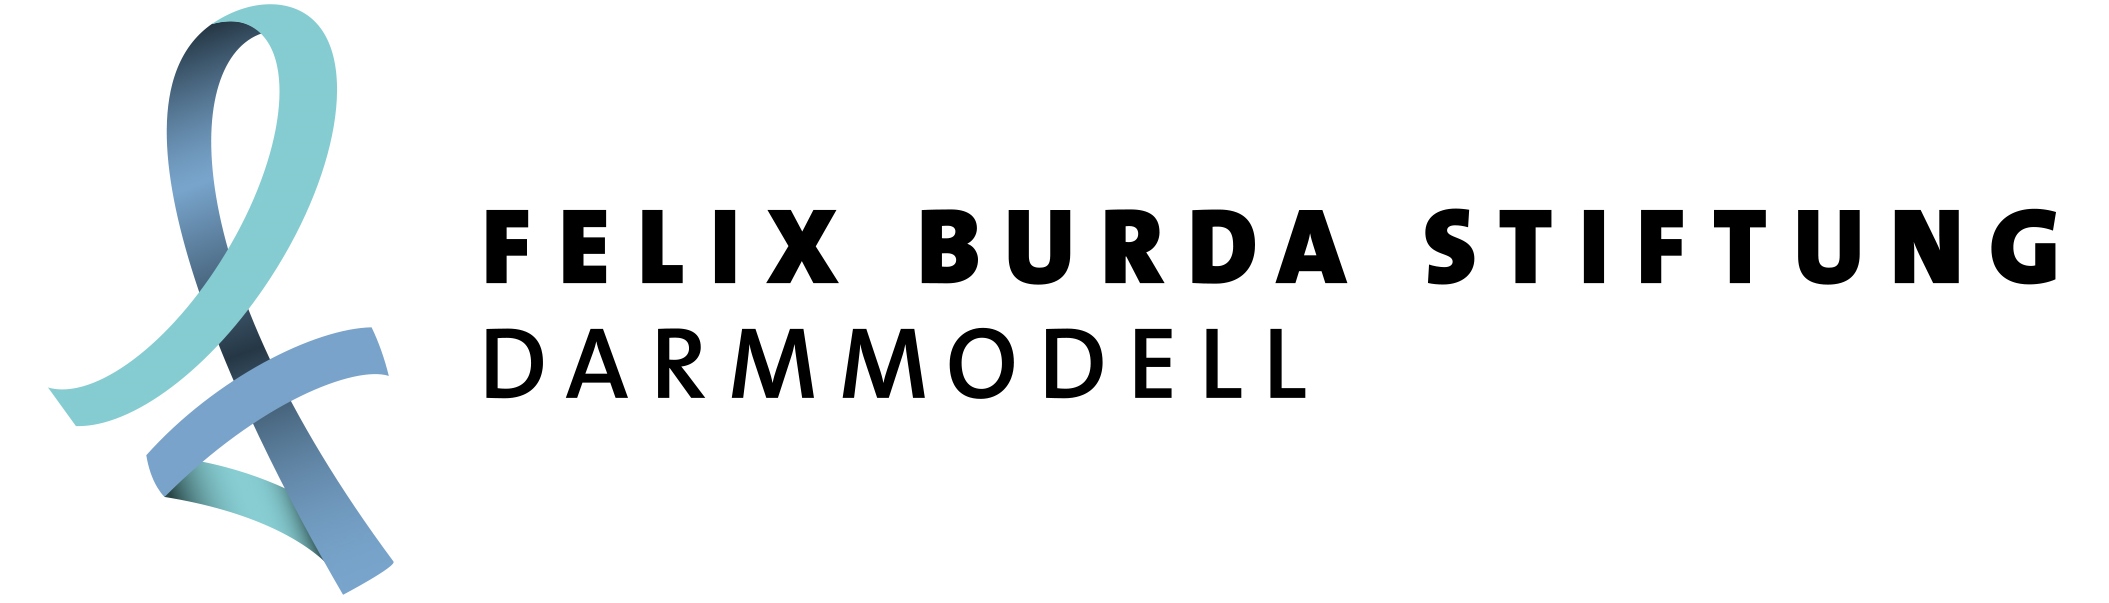 Felix Burda Stiftung Darmmodell Logo